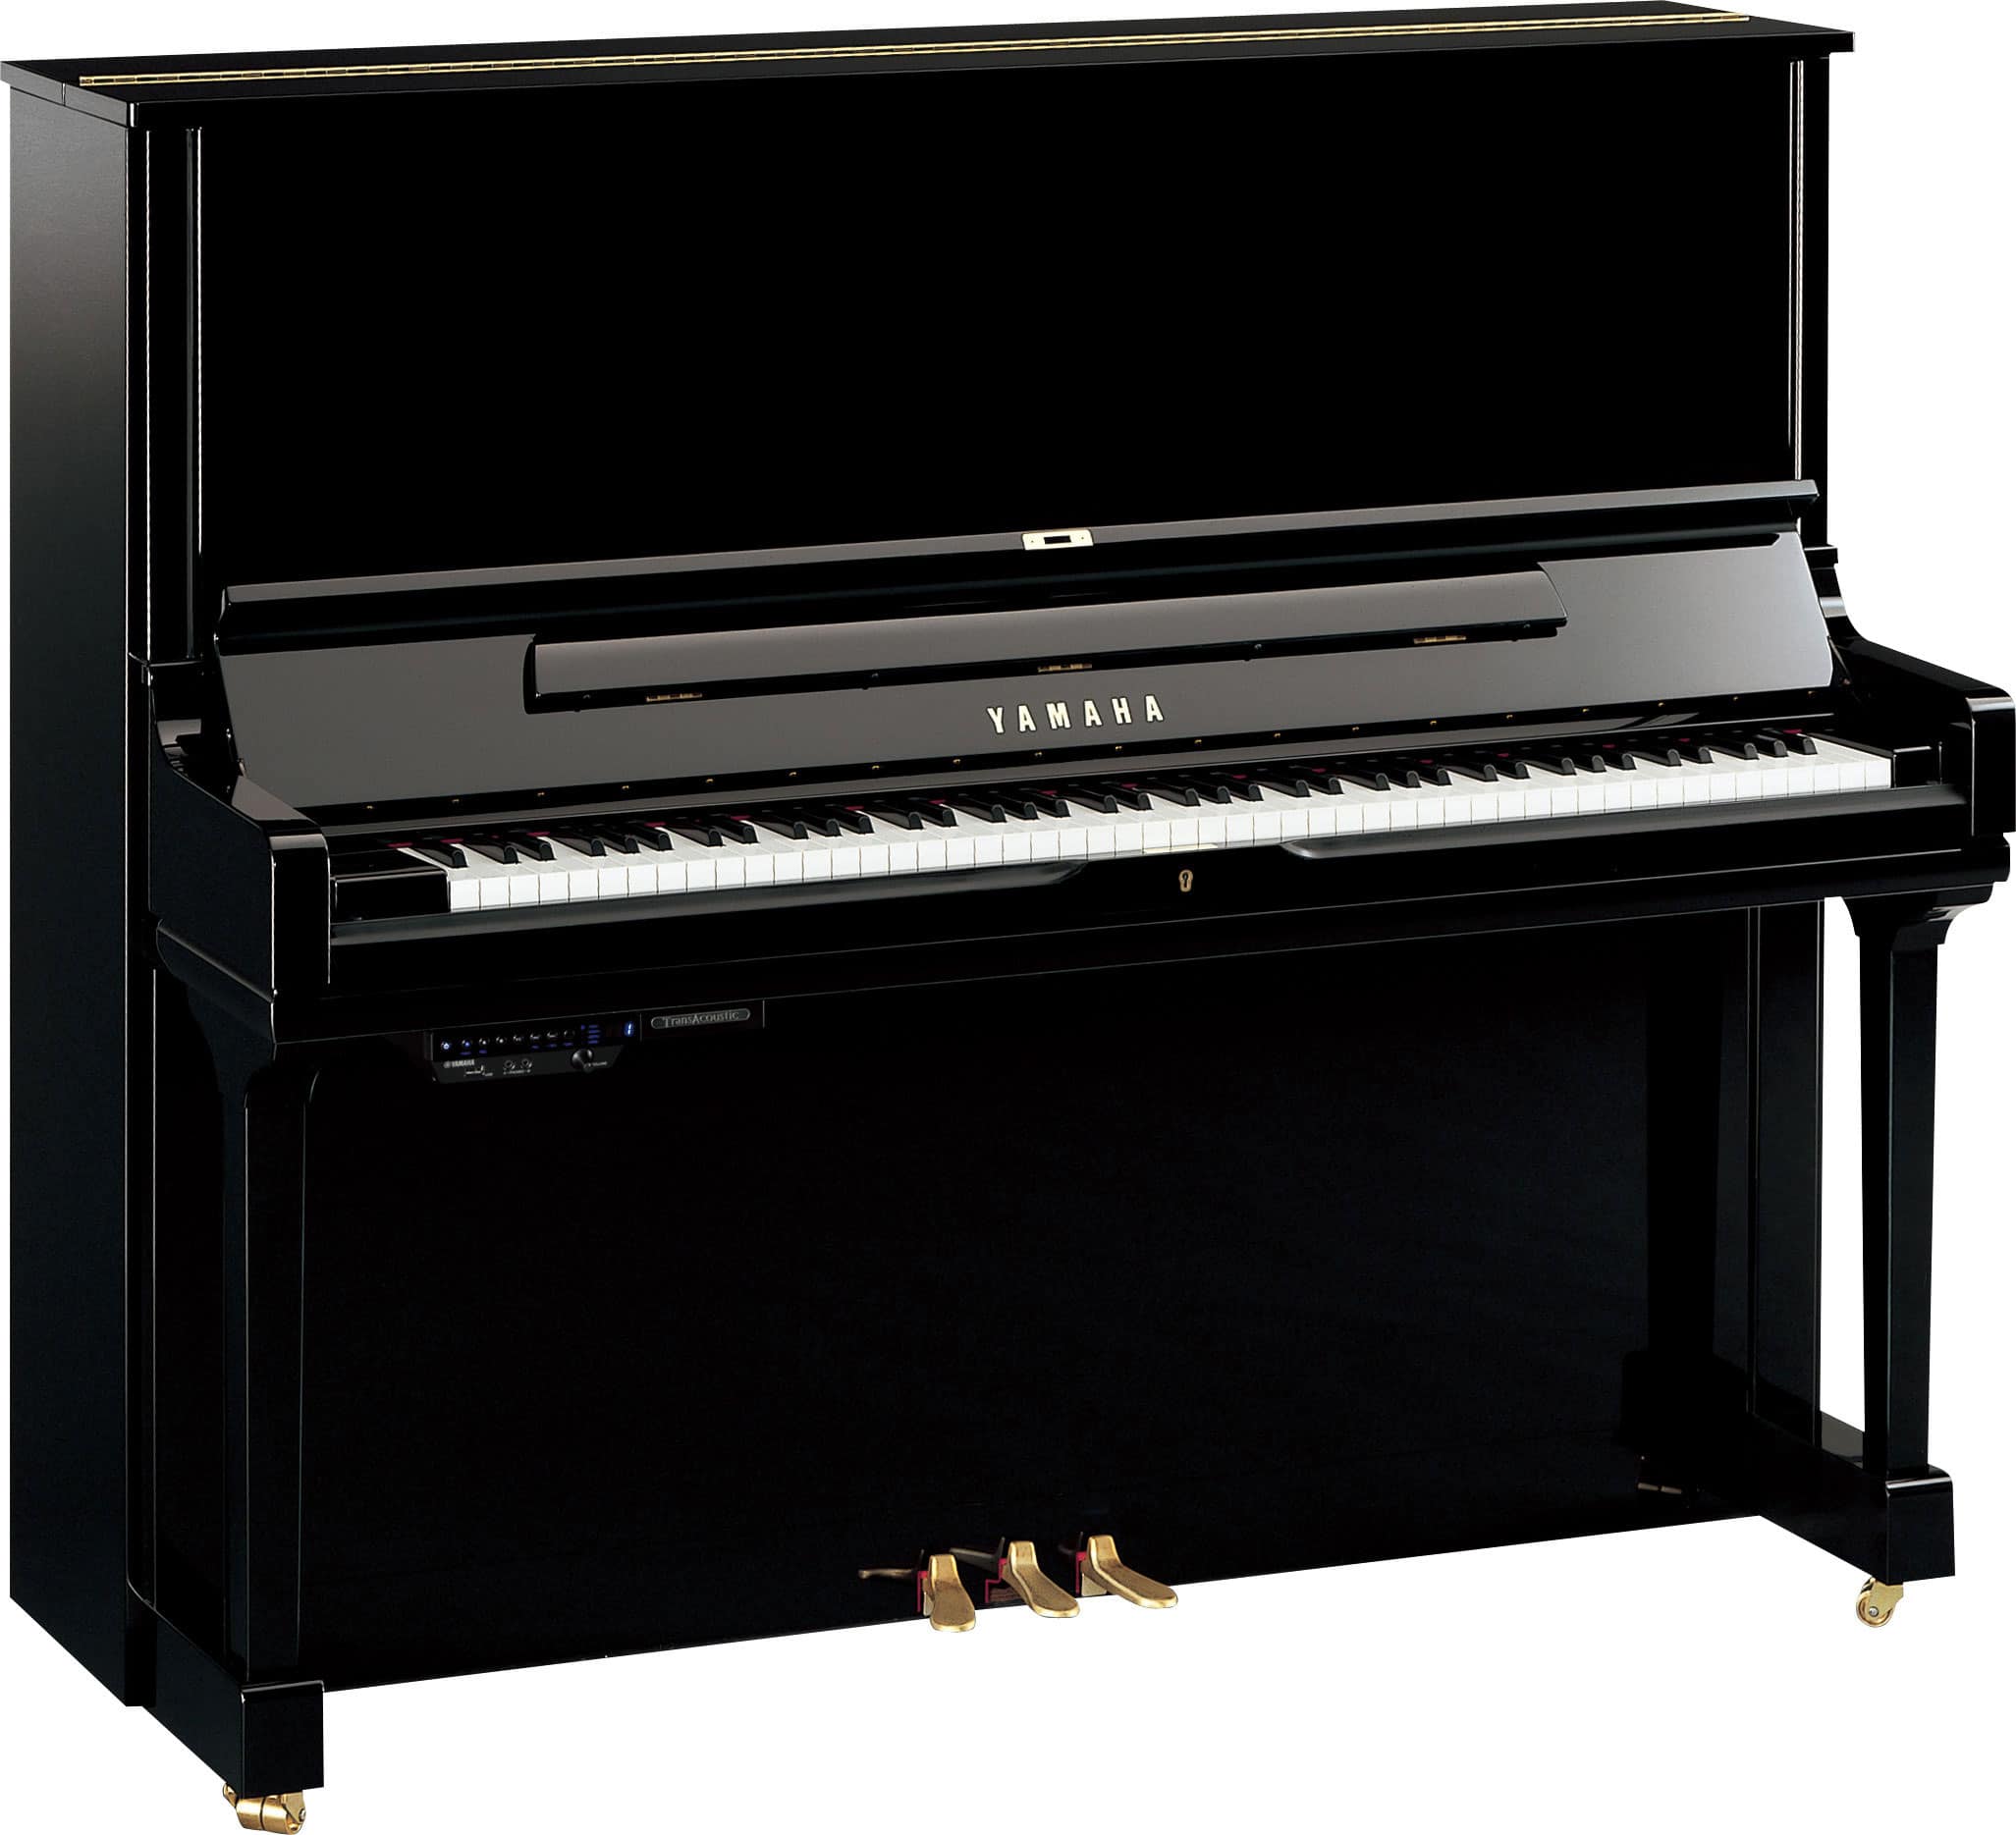 Yamaha YUS3 Upright Piano in polished ebony